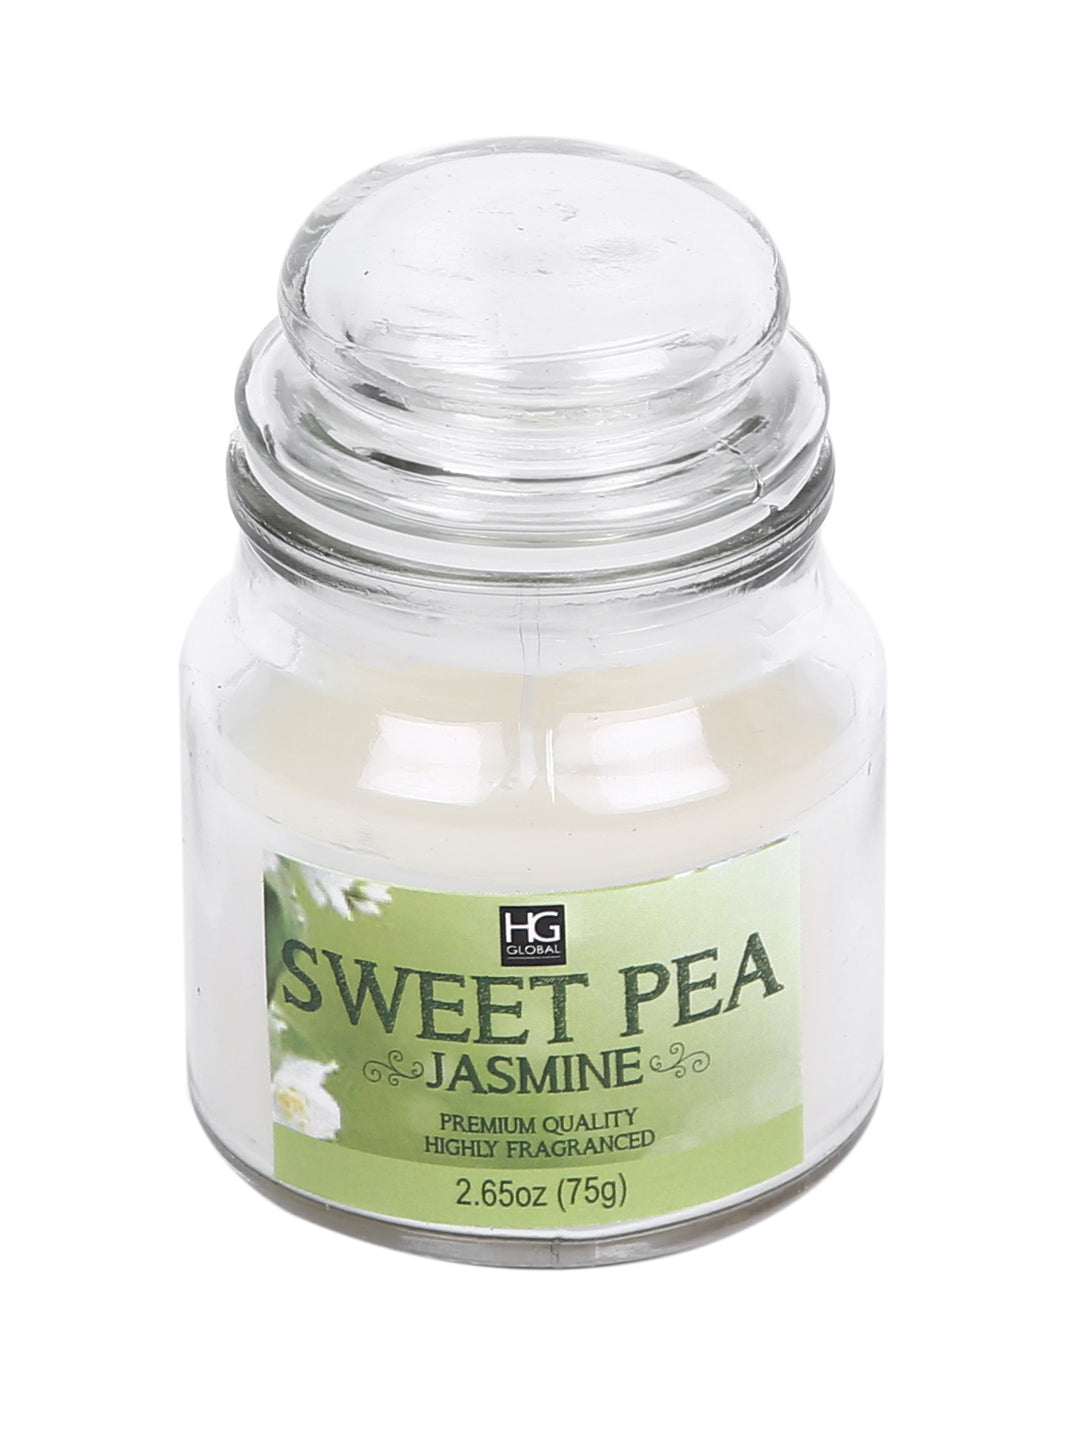 Hosley® Sweet Pea Jasmine Highly Fragranced, 2.65 Oz wax, Jar Candle